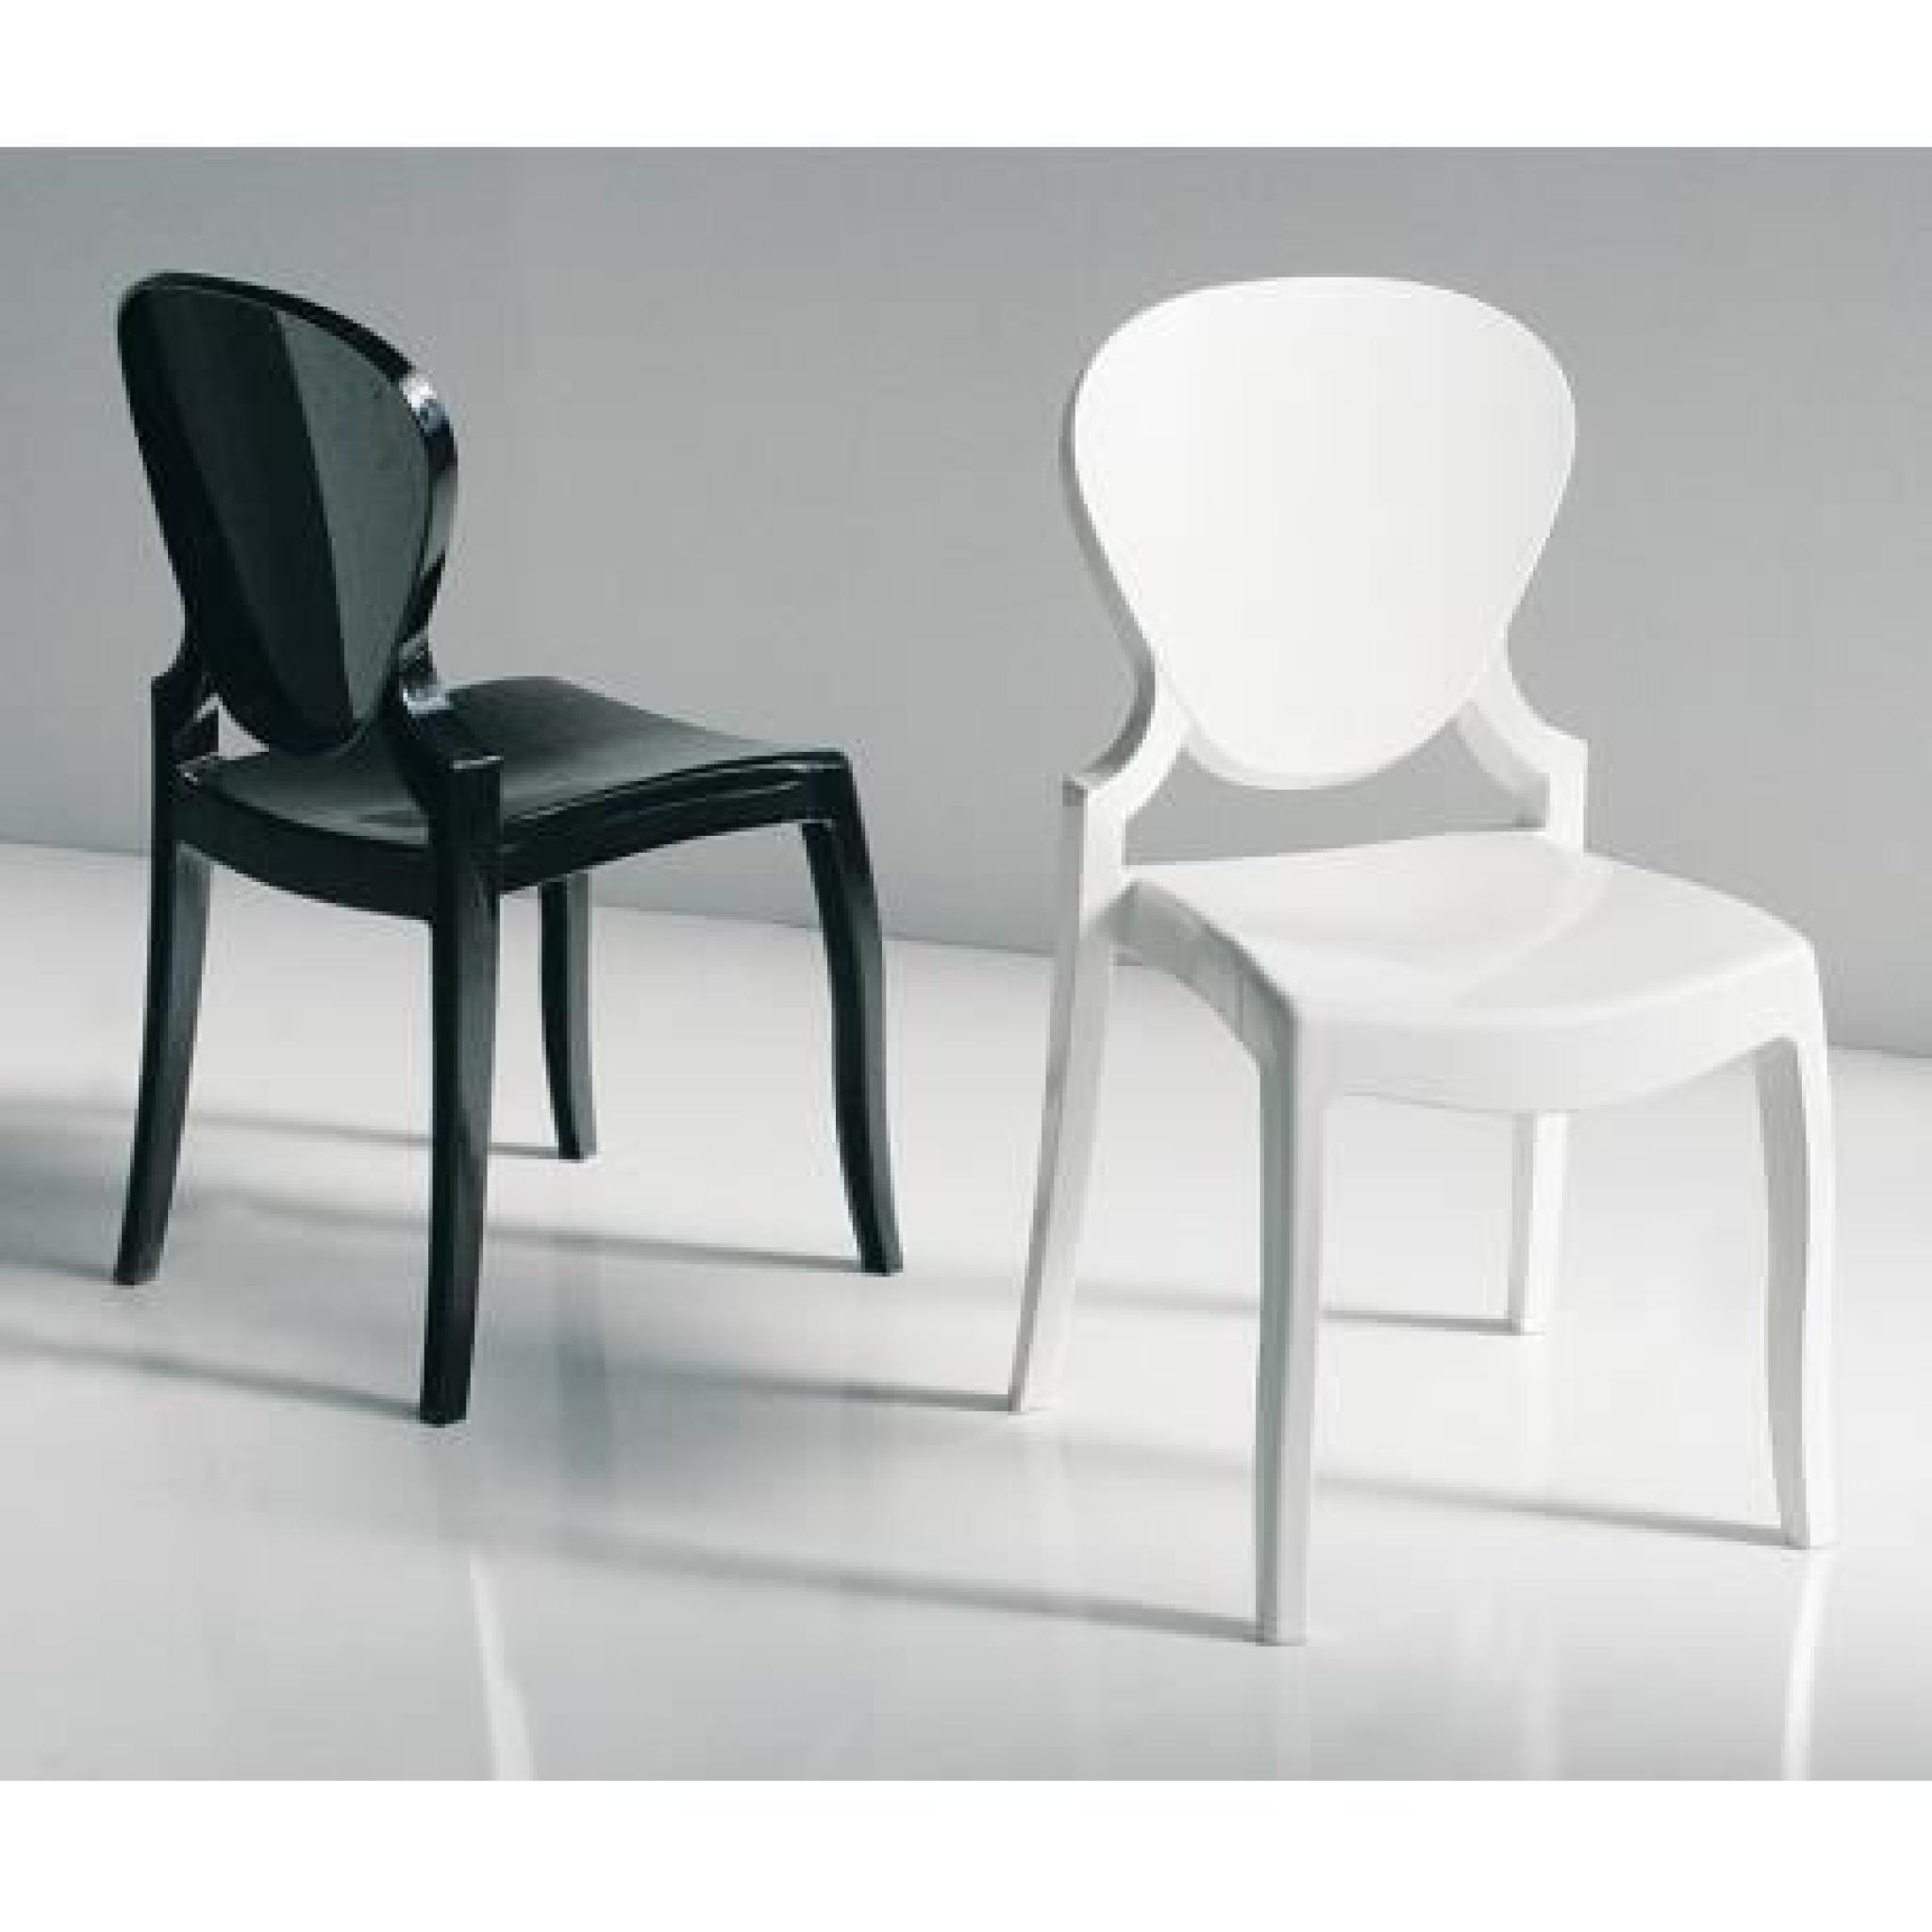 QUEEN - Chaise en polycarbonate blanc opaque